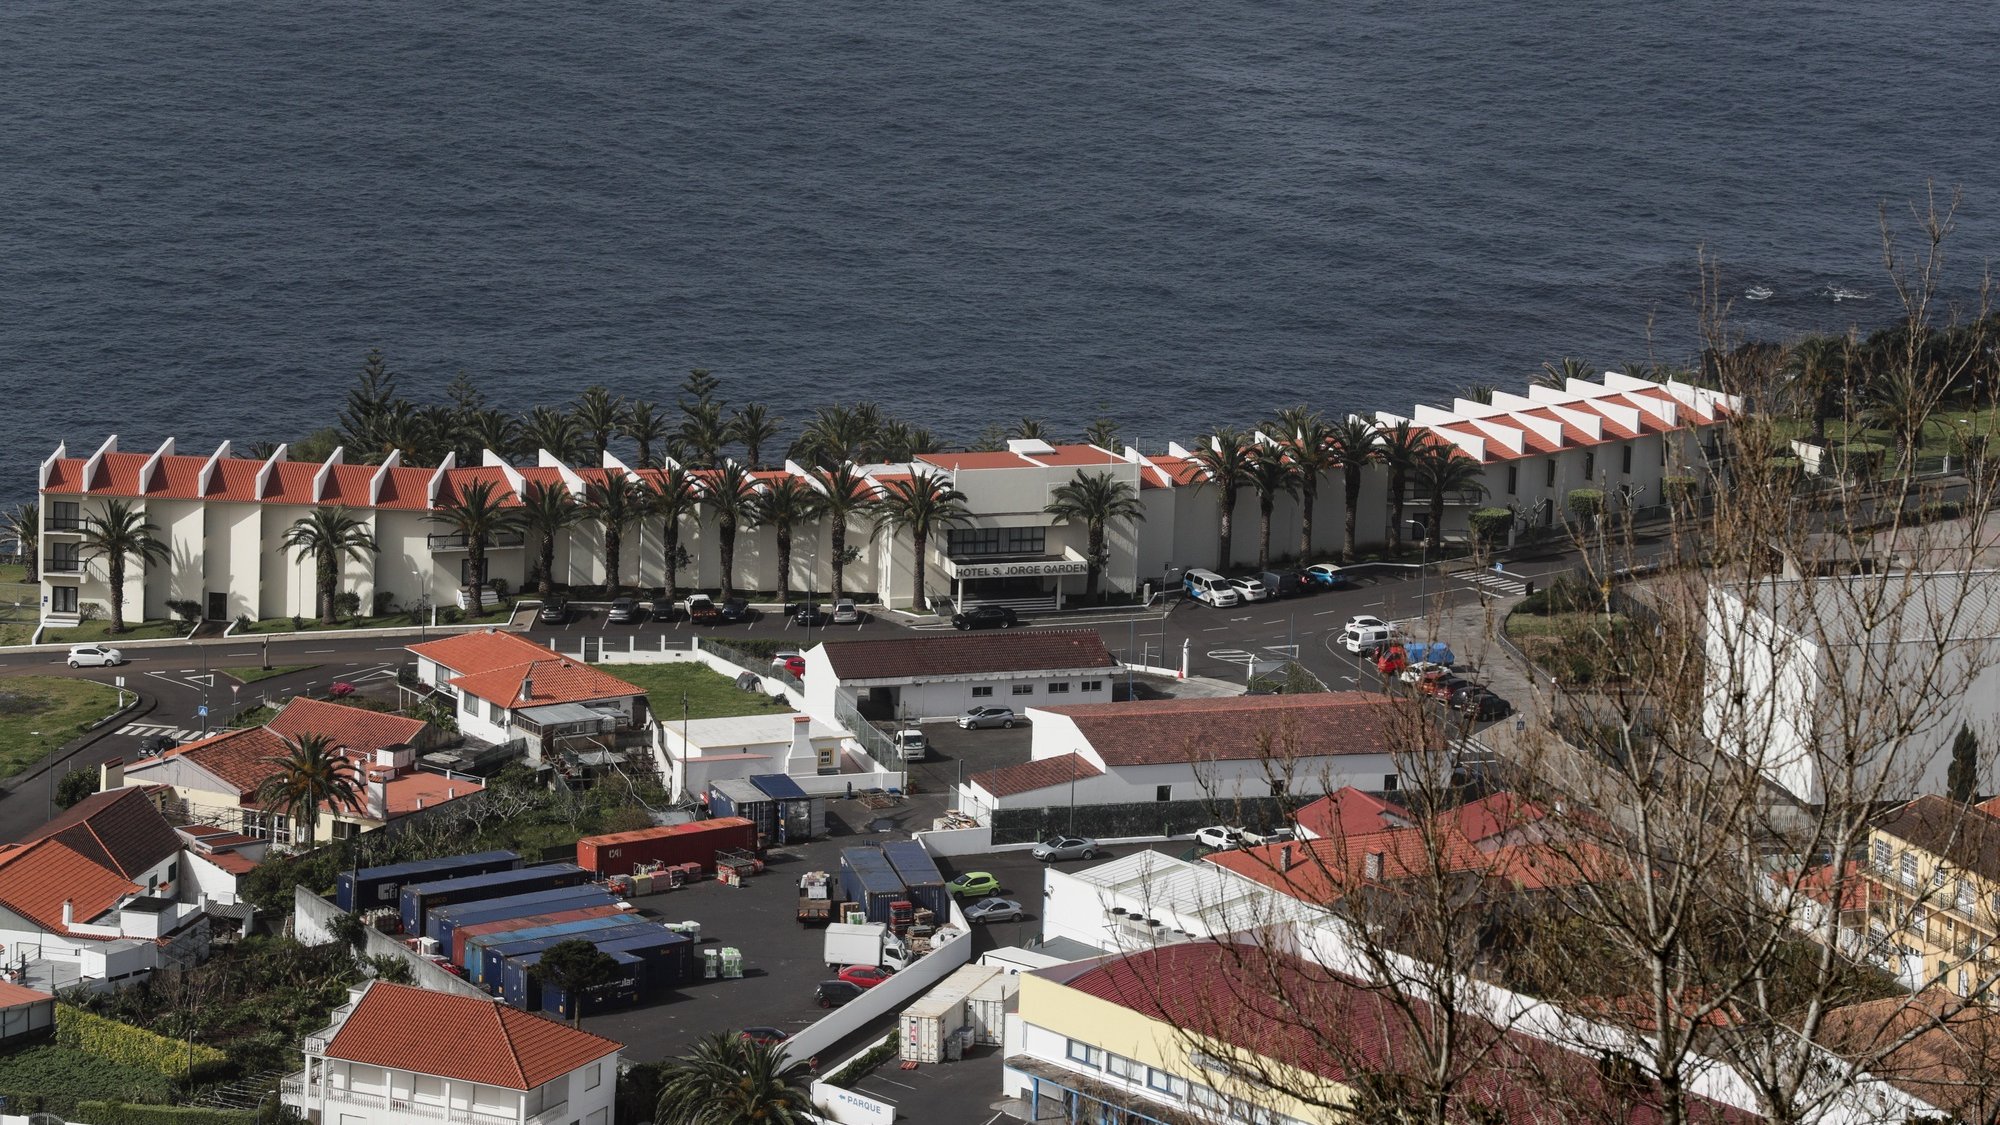 Vista geral de parte da vila de Velas na ilha de São Jorge nos Açores com o hotel Garden, 29 de março de 2022. TIAGO PETINGA/LUSA